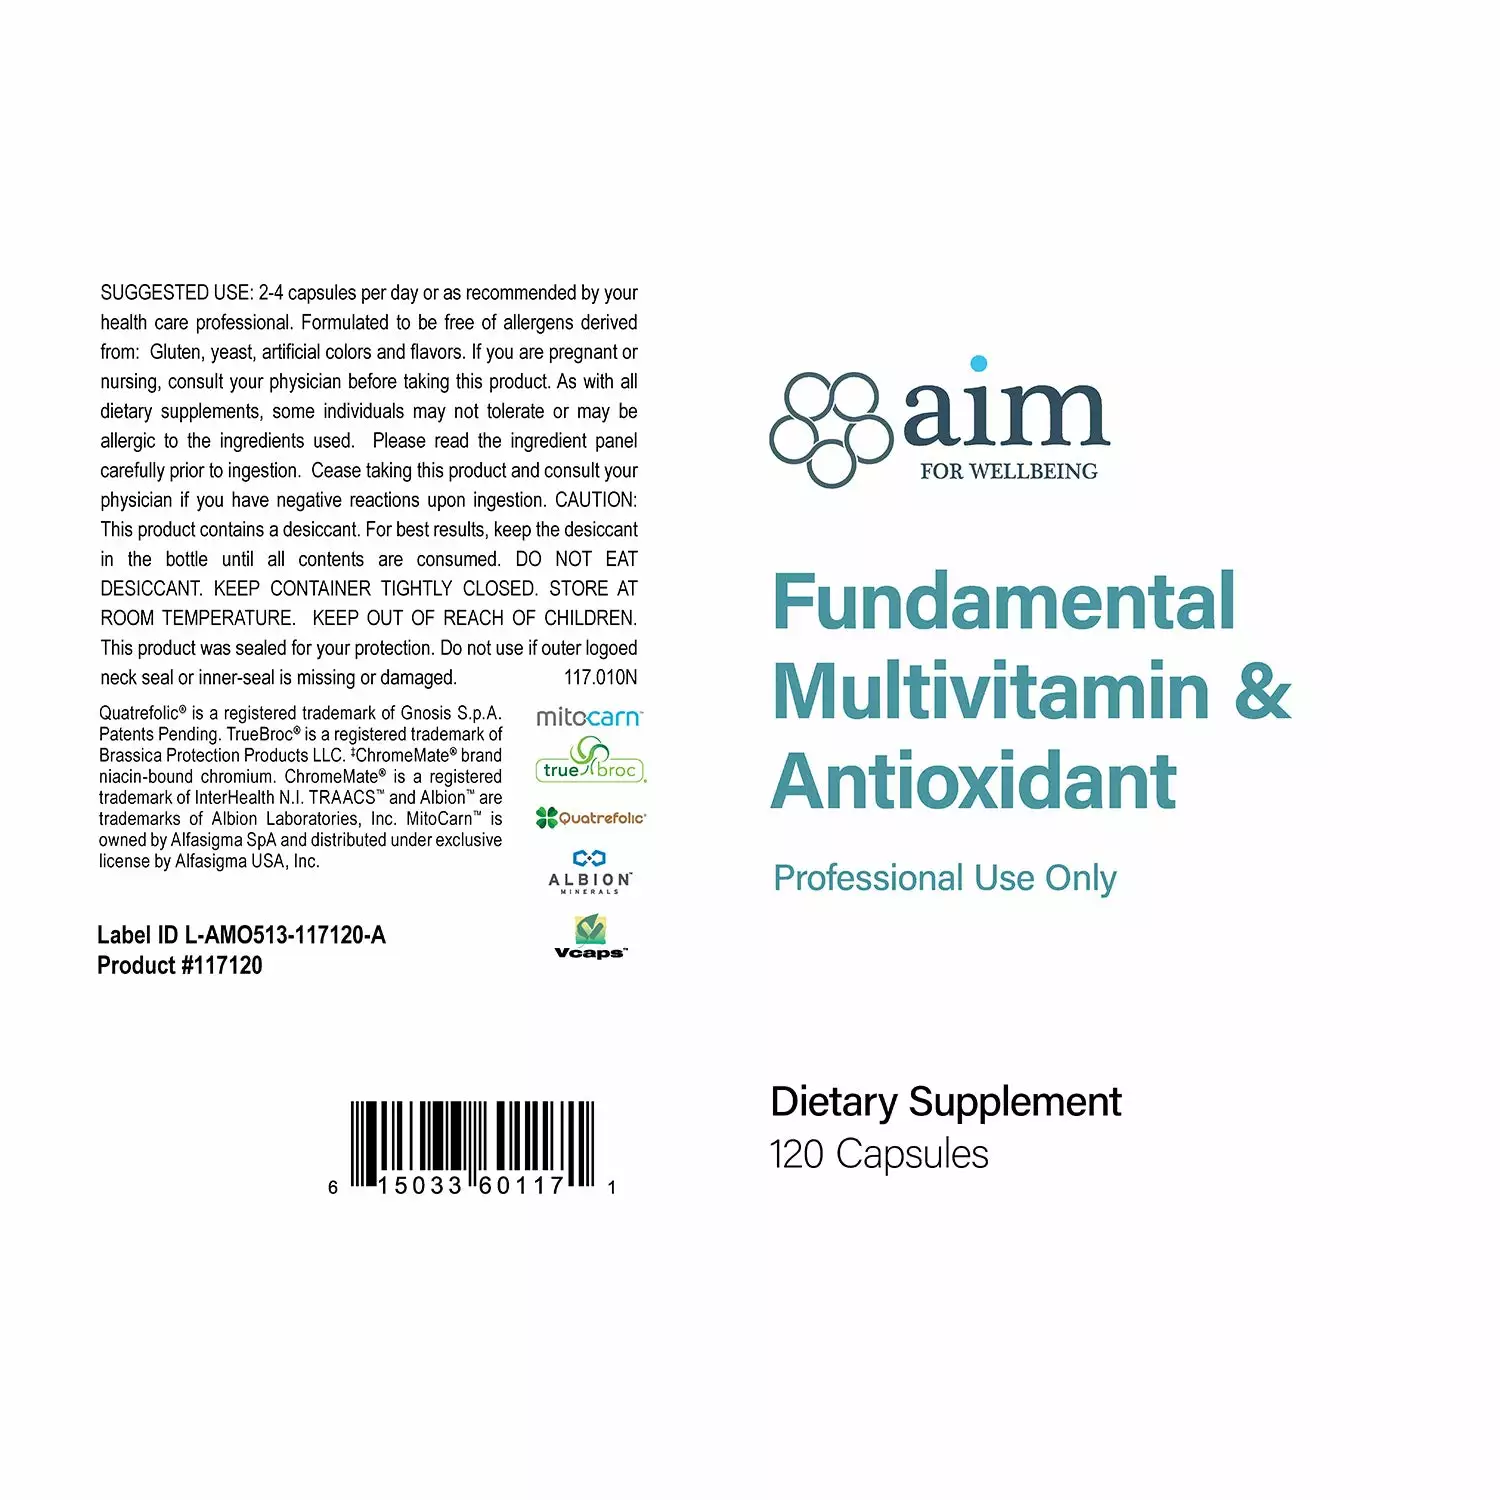 Fundamental Multivitamin & Antioxidant